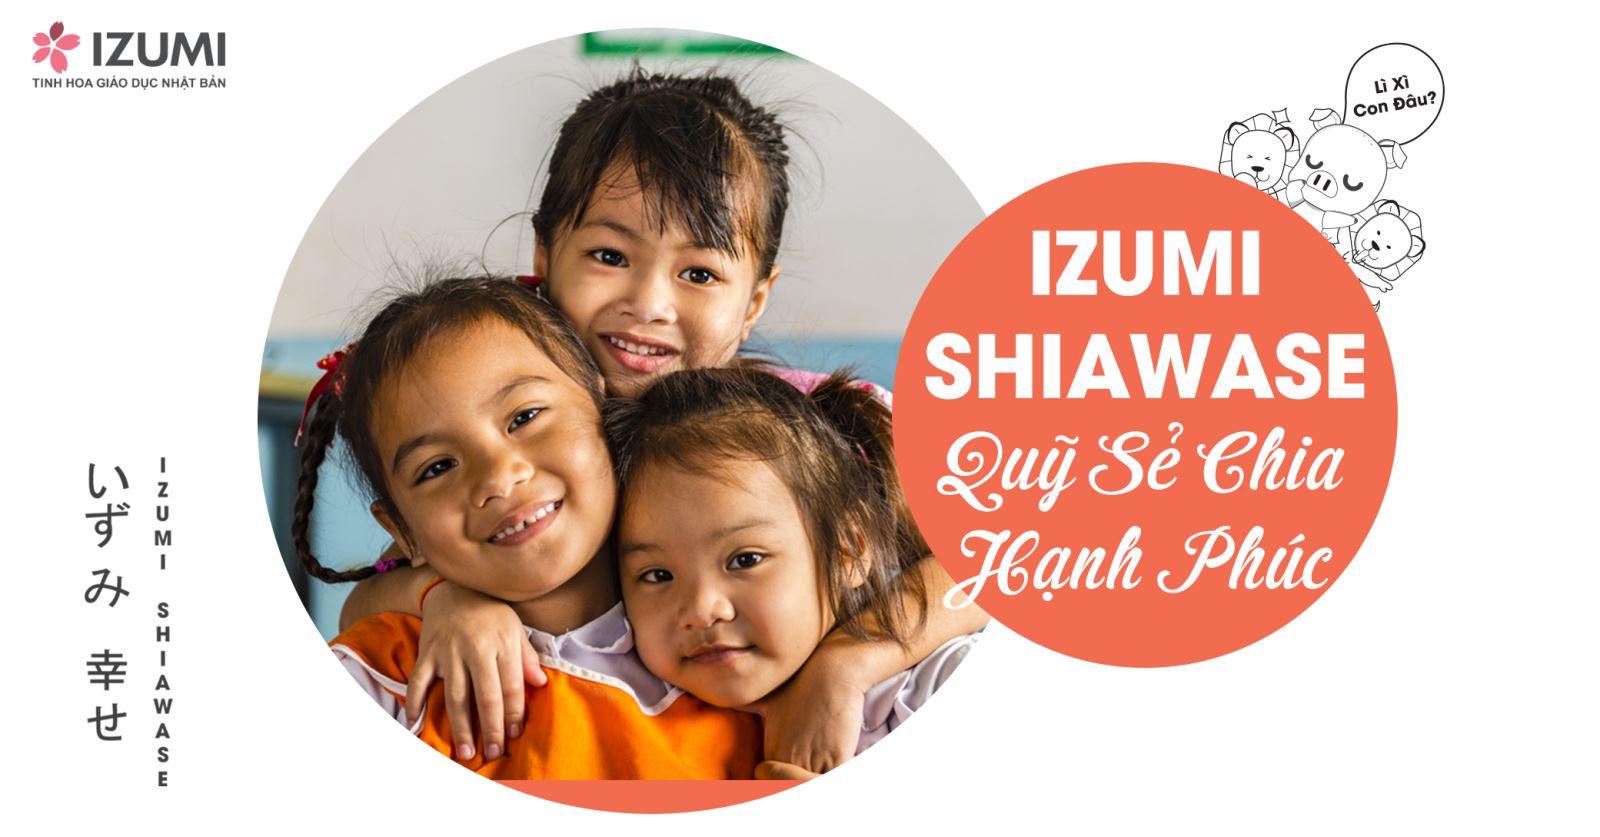 Hạnh Phúc Bất Tận: Chương Trình Từ Thiện Quỹ Izumi Shiawase